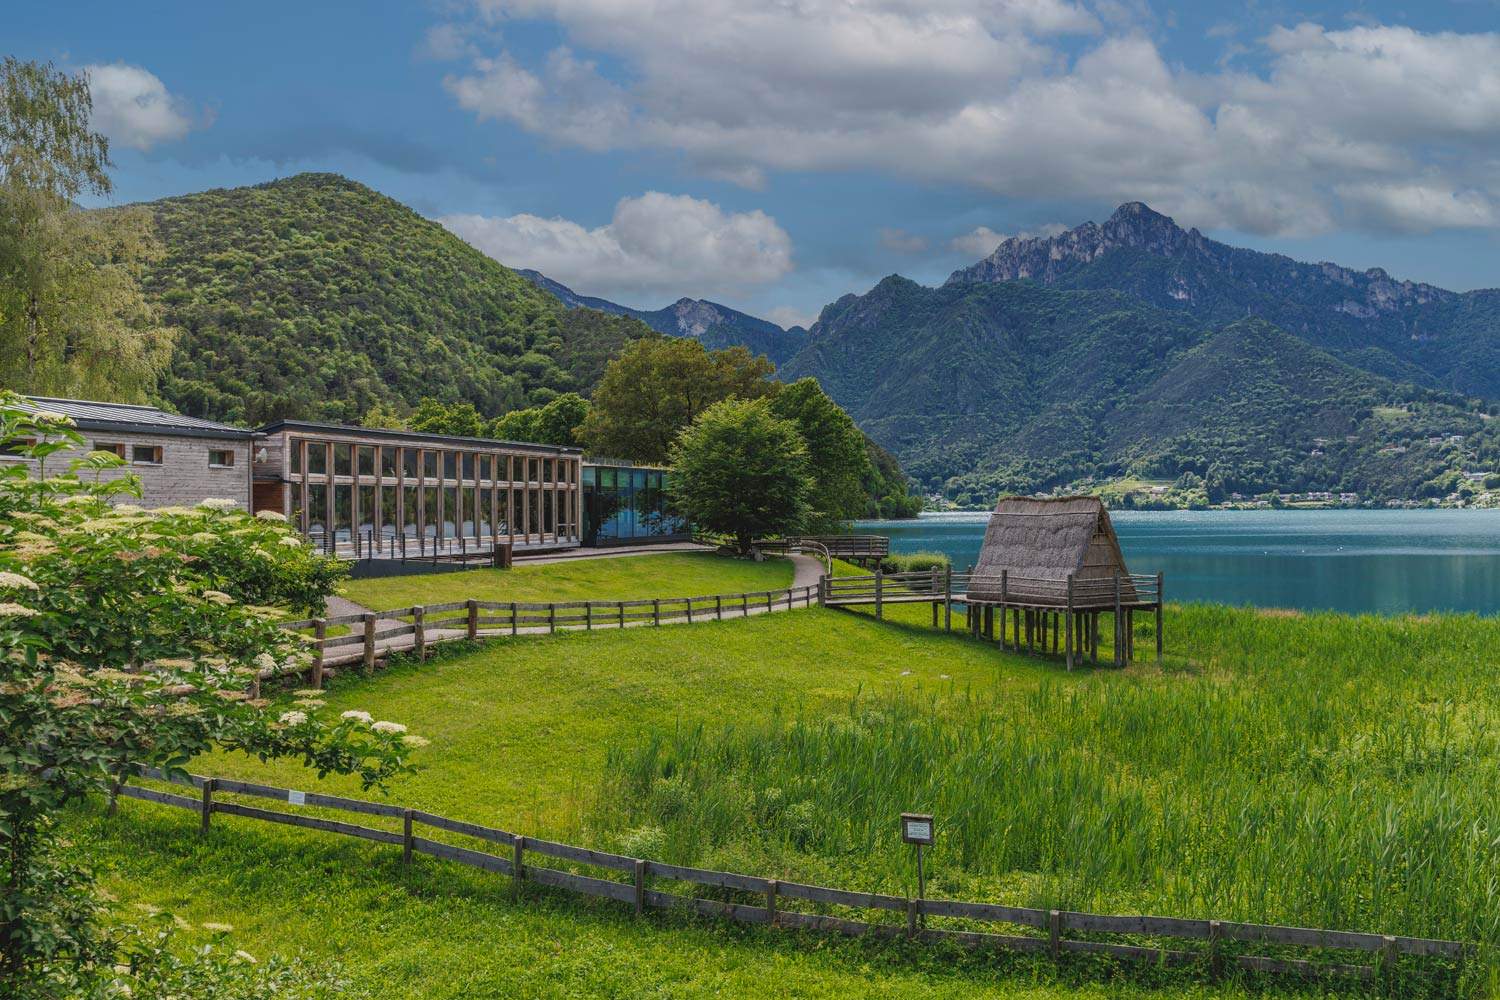 Le Lake Ledro Pile-Dwelling Museum fête ses 50 ans: de nombreux événements pour célébrer l'événement